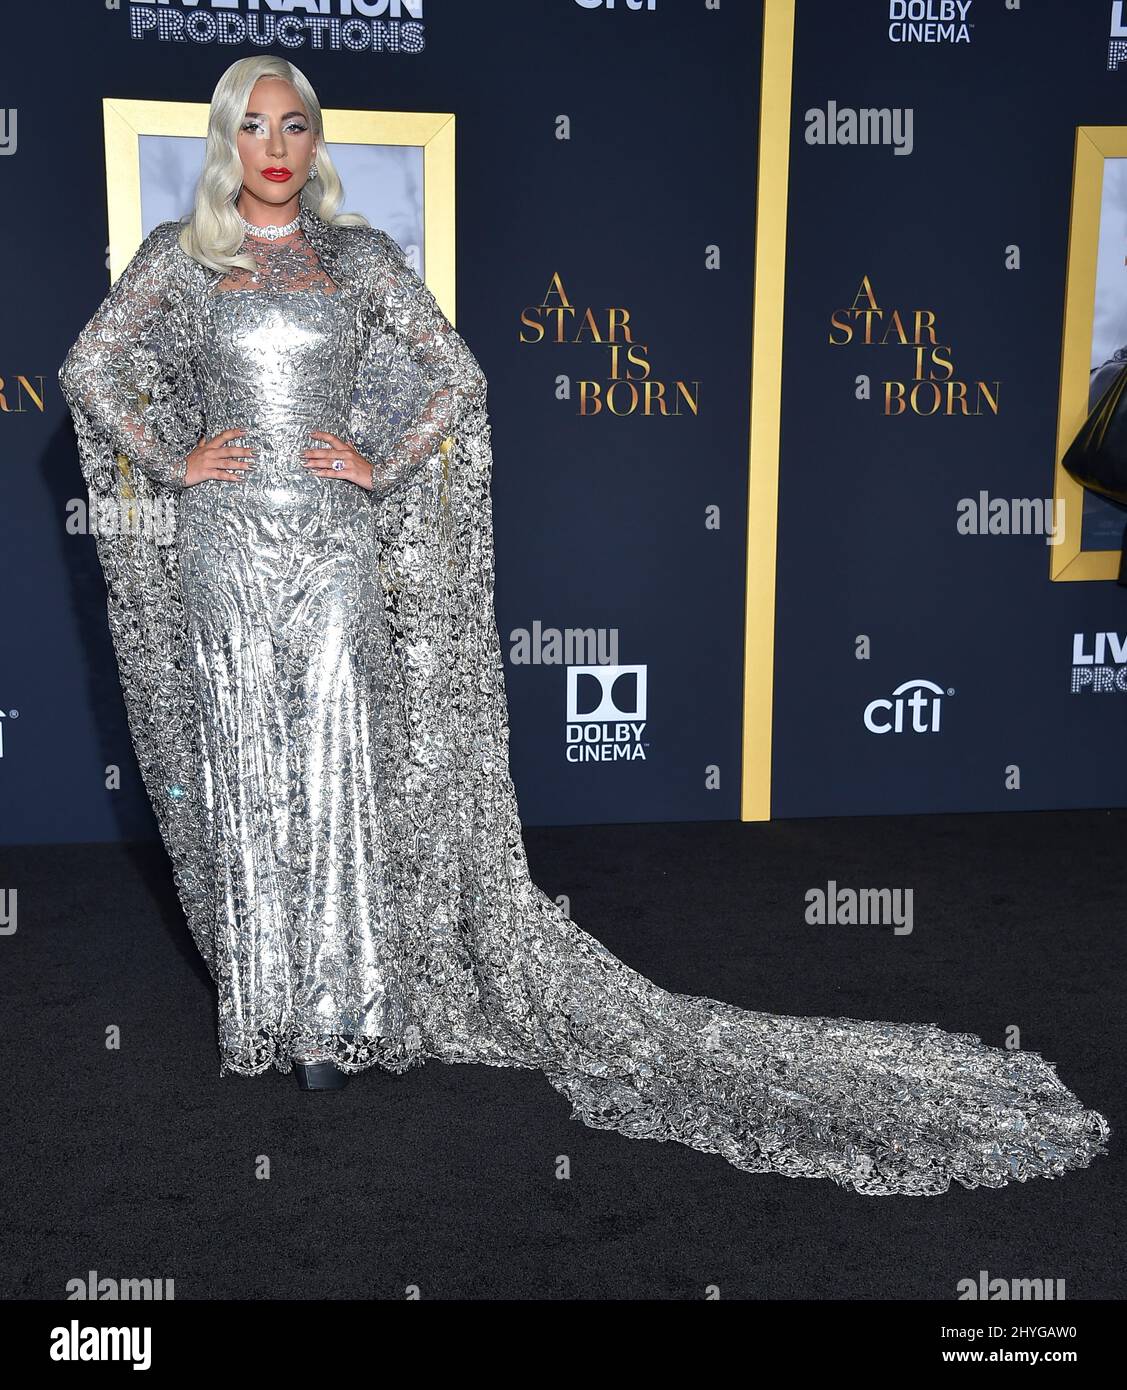 Lady Gaga assister à la première d'Une étoile est née, à Los Angeles, Californie Banque D'Images